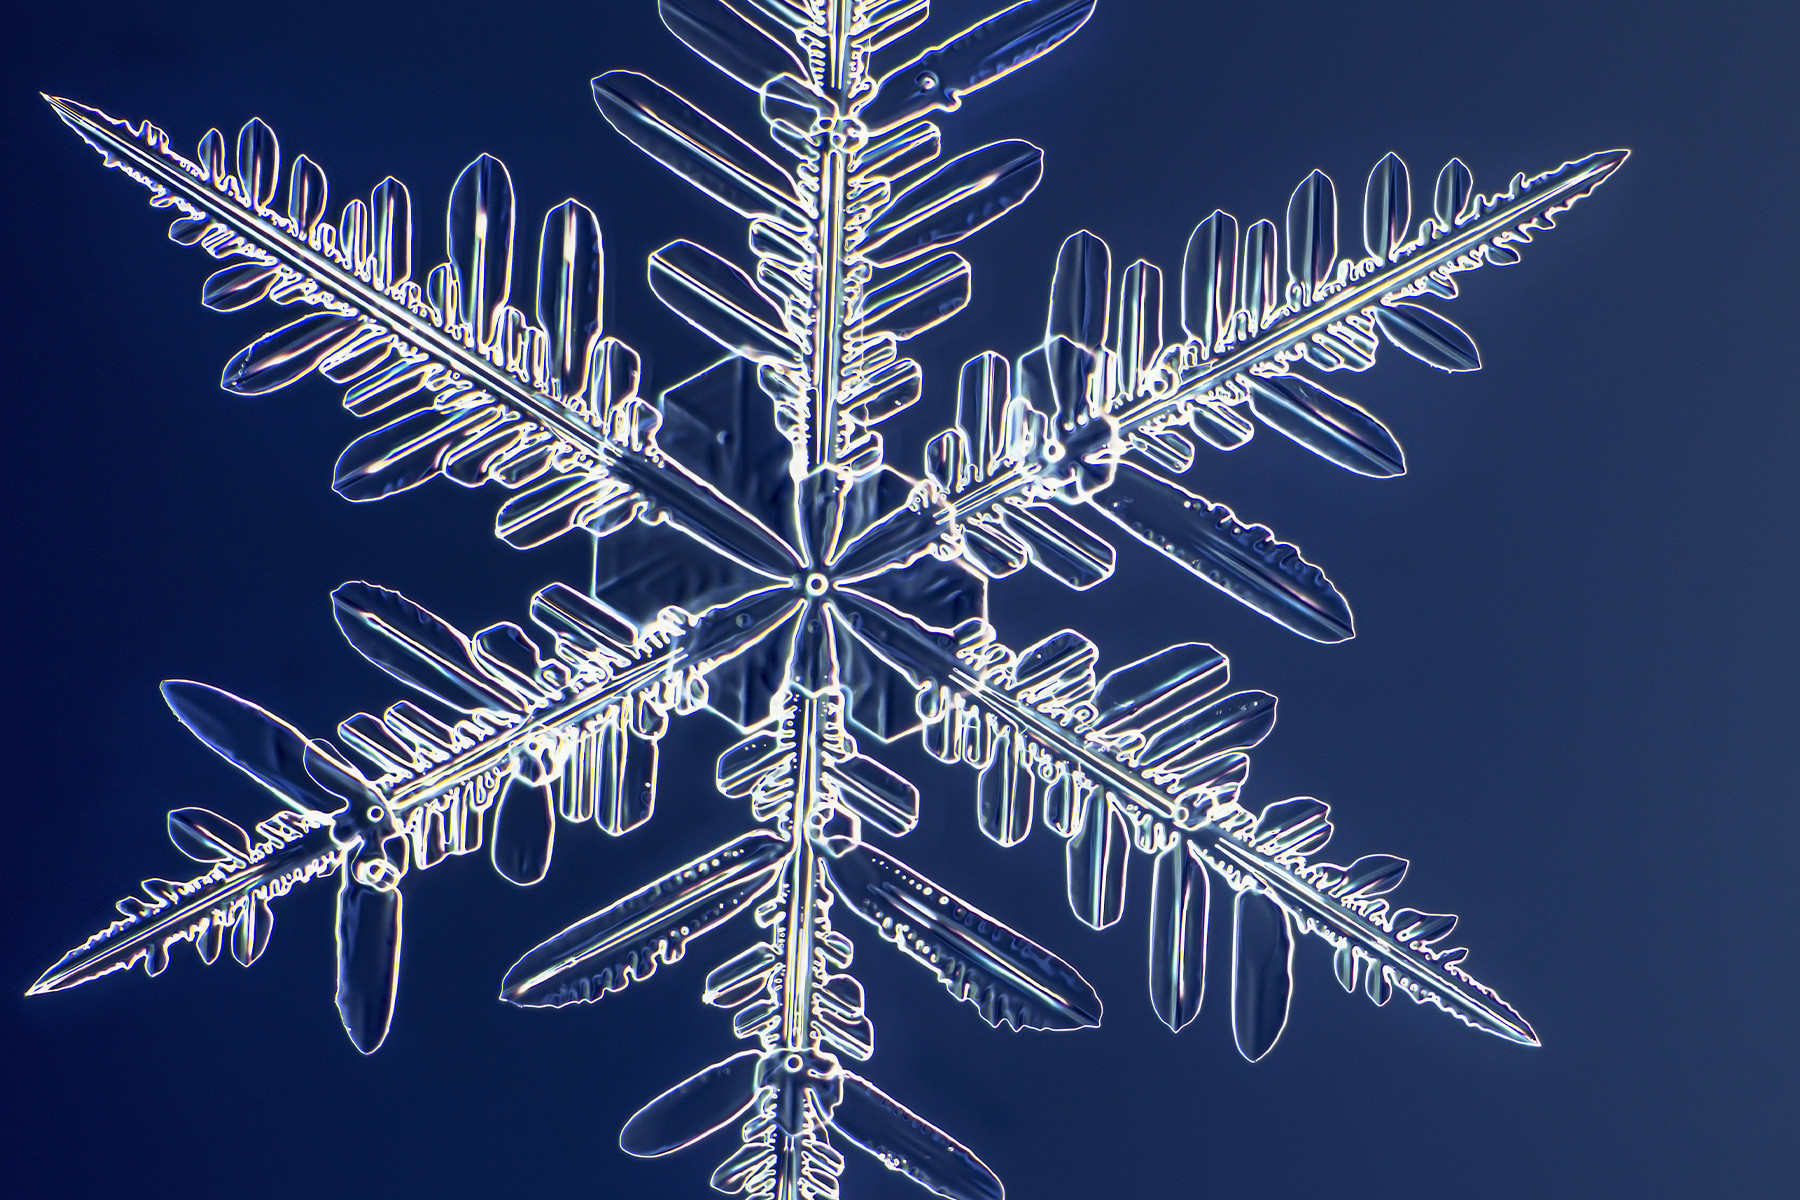 過去最高の1億画素で高解像度撮影された「雪の結晶」が異次元